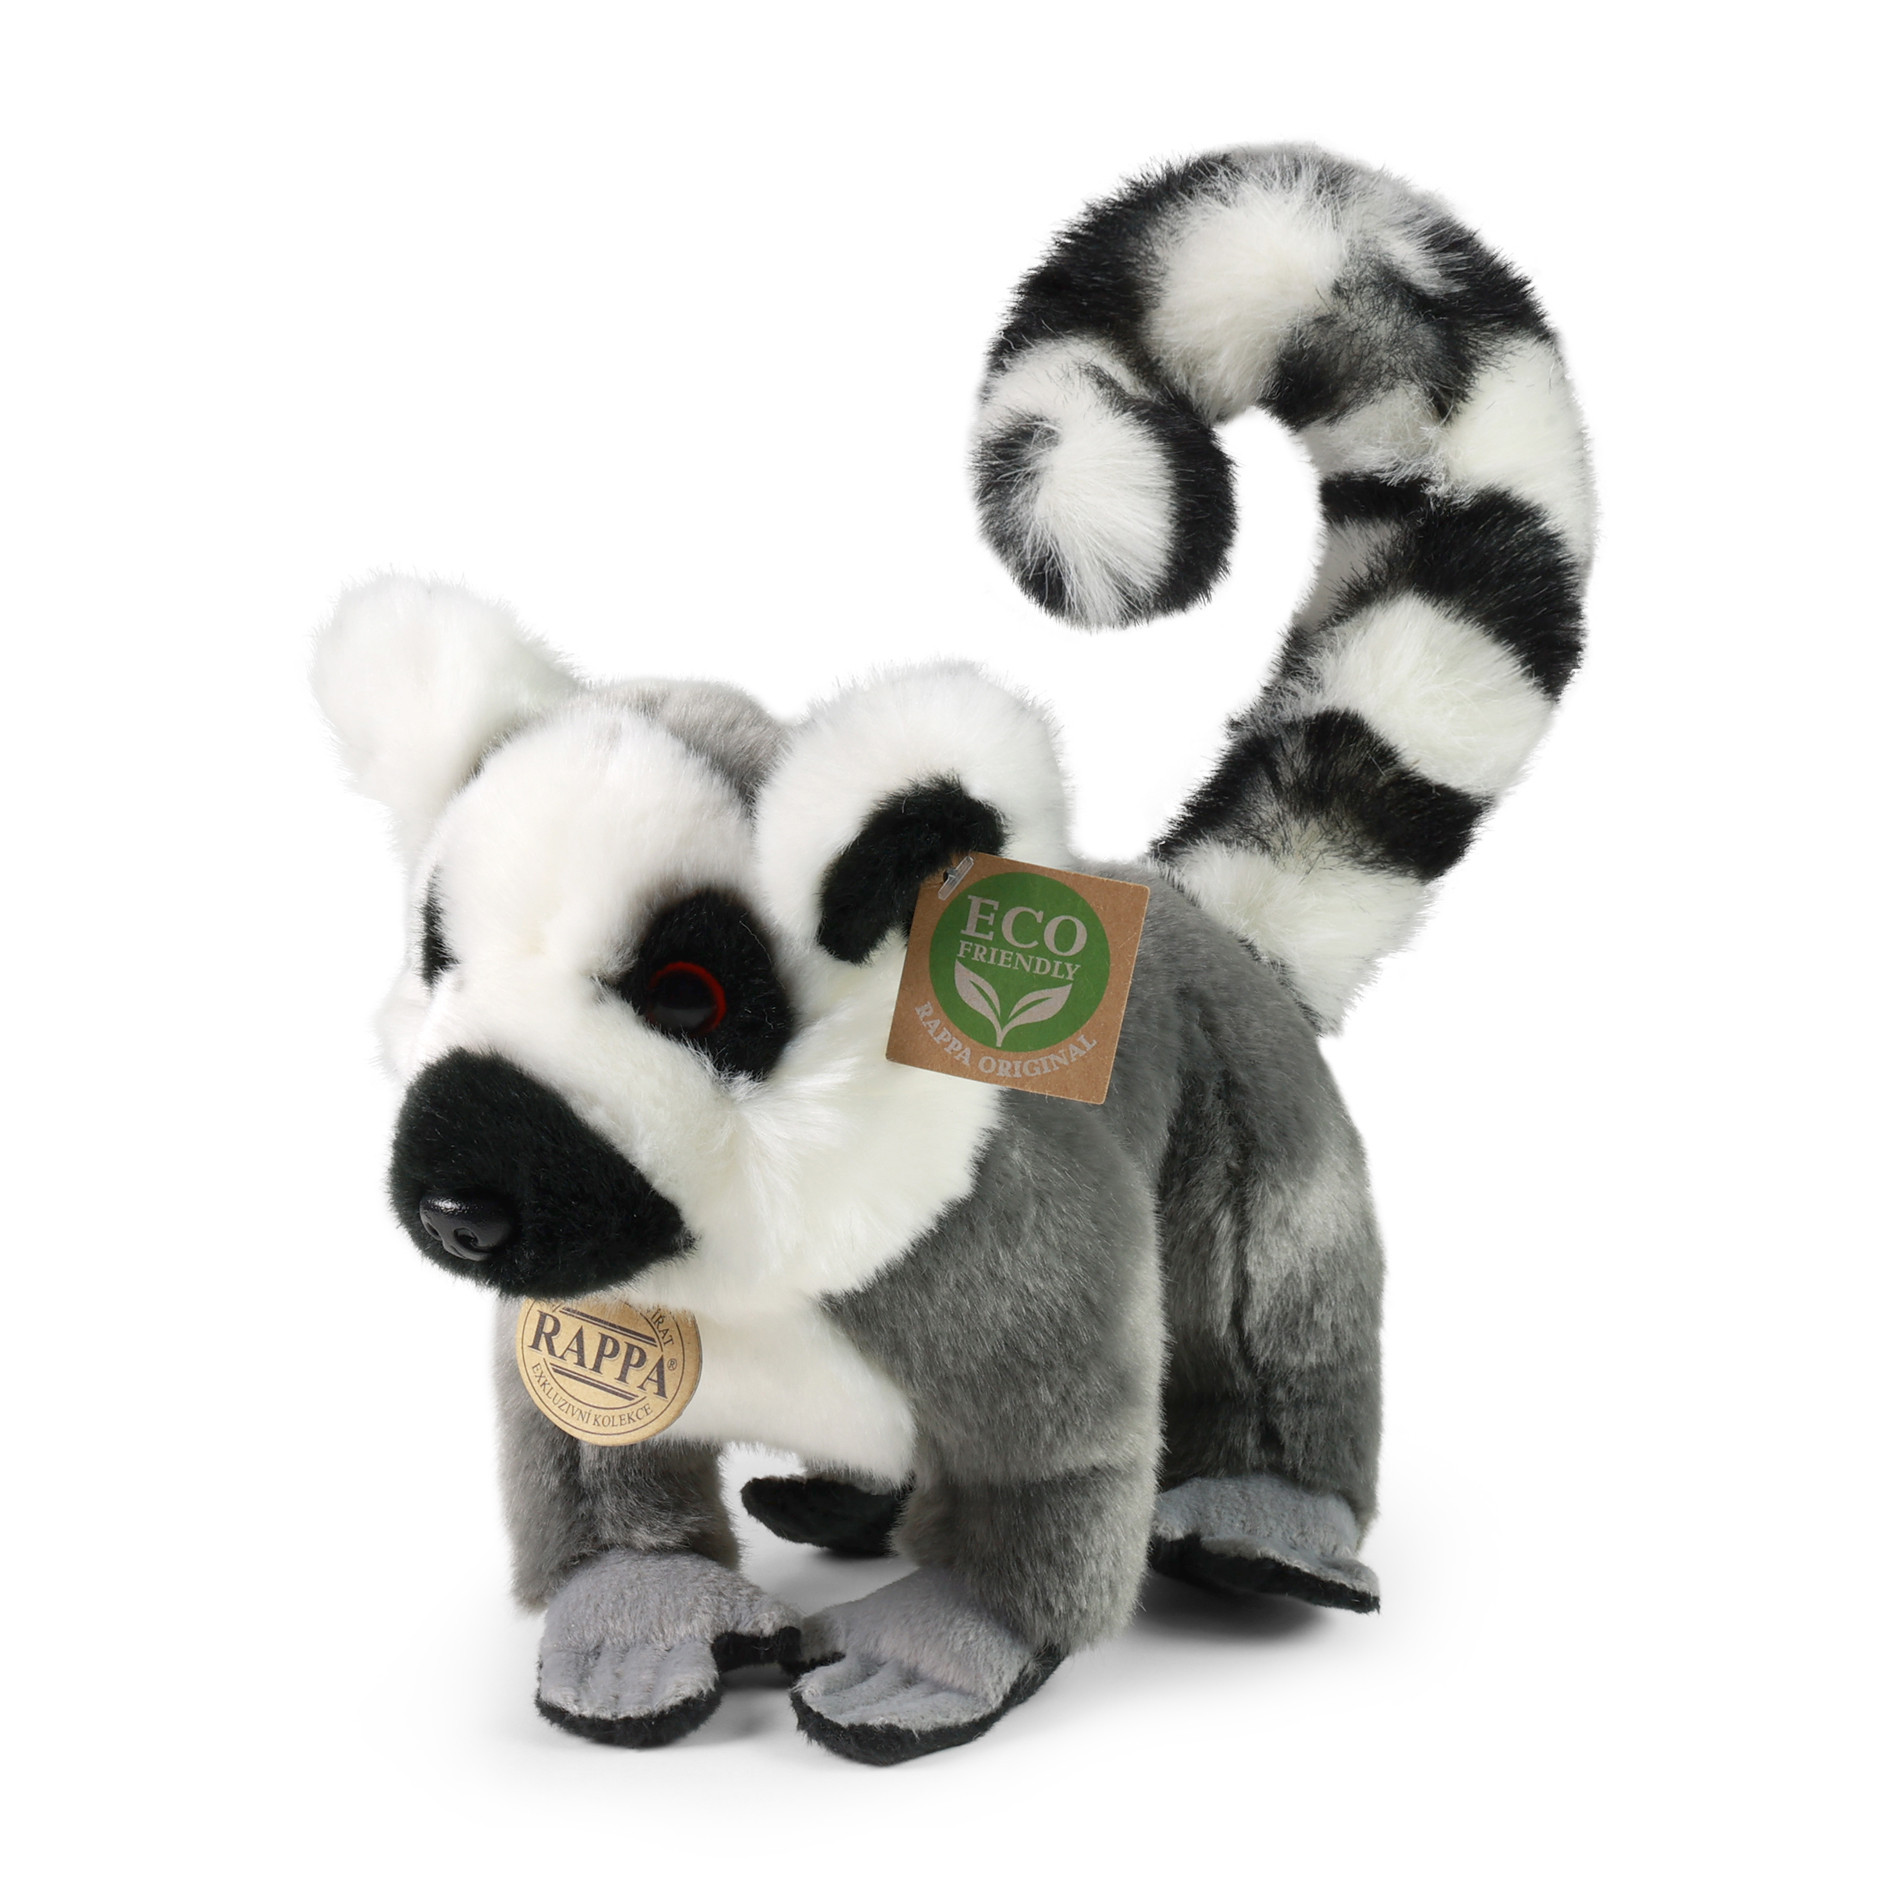 Plyšový lemur stojaci 28 cm ECO-FRIENDLY